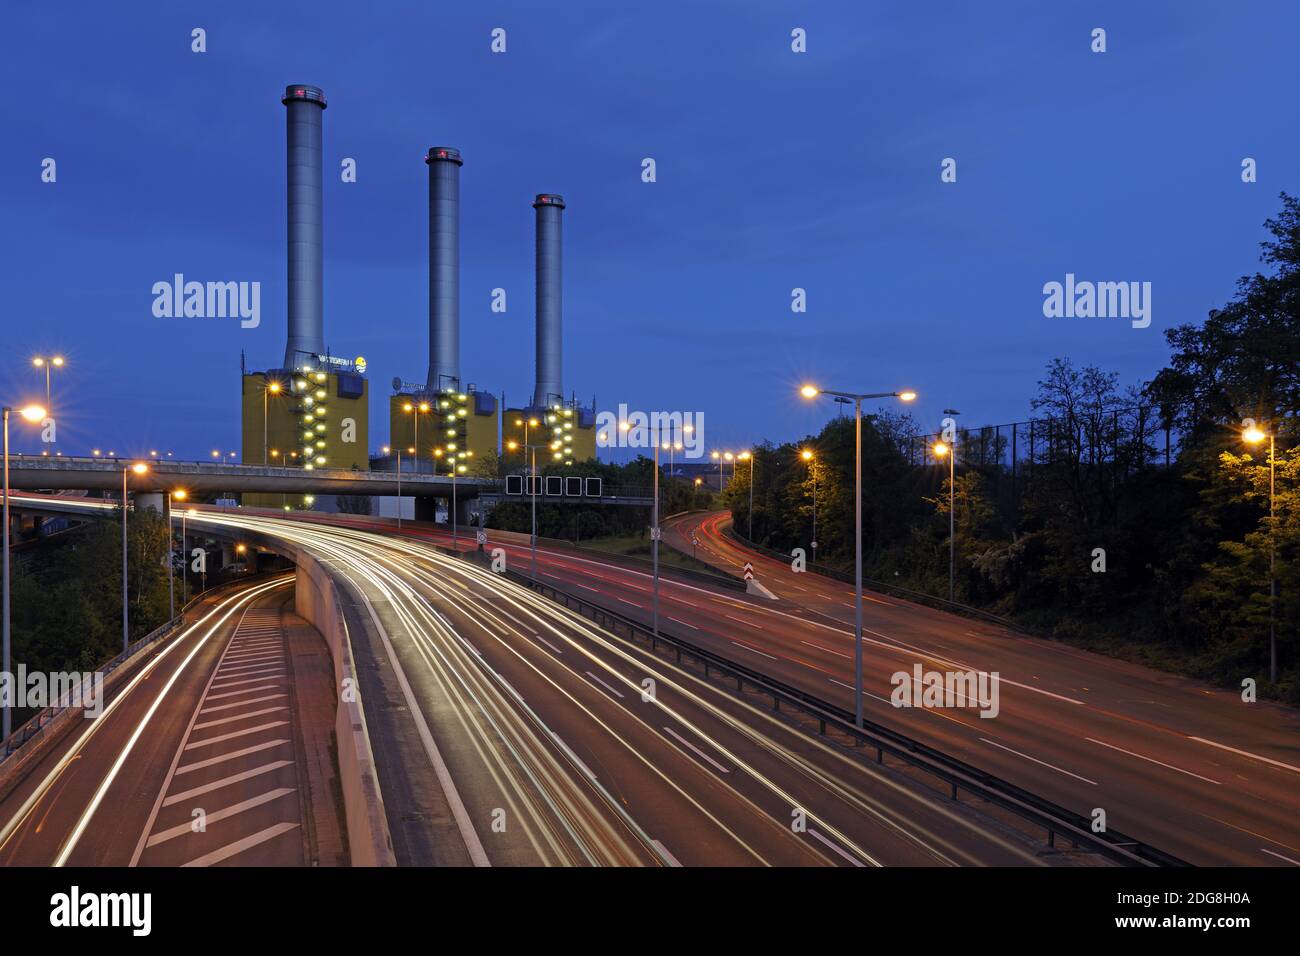 Heizkraftwerk der Firma Vattenfall an der Berliner Stadtautobahn bei Nacht Stock Photo